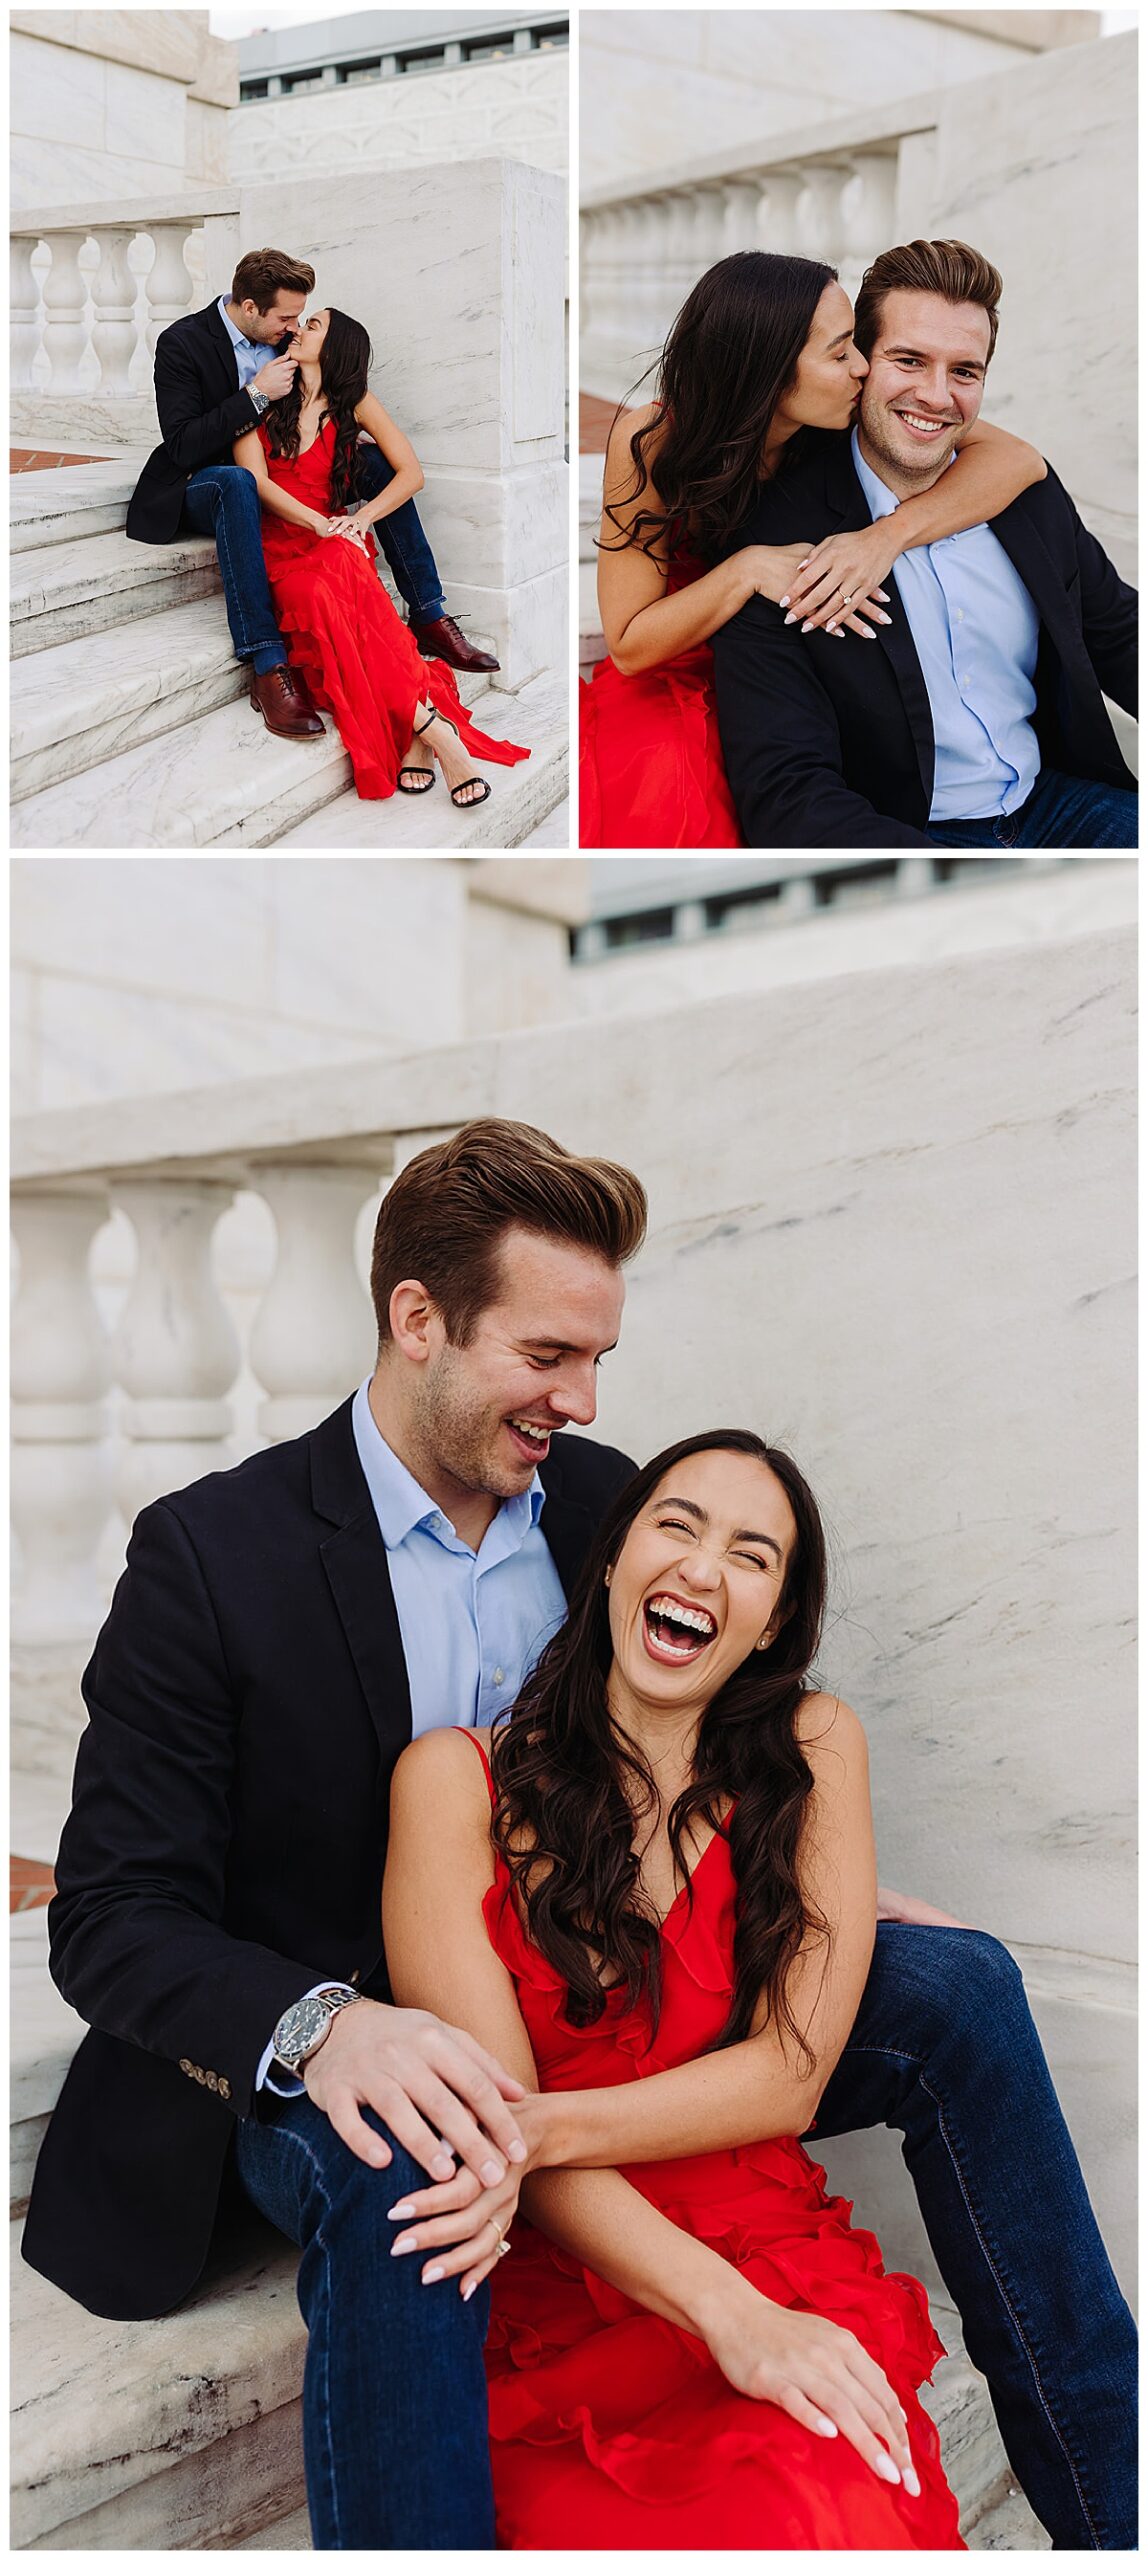 Lady and Gentleman hug and kiss on steps for Kayla Bouren Photography